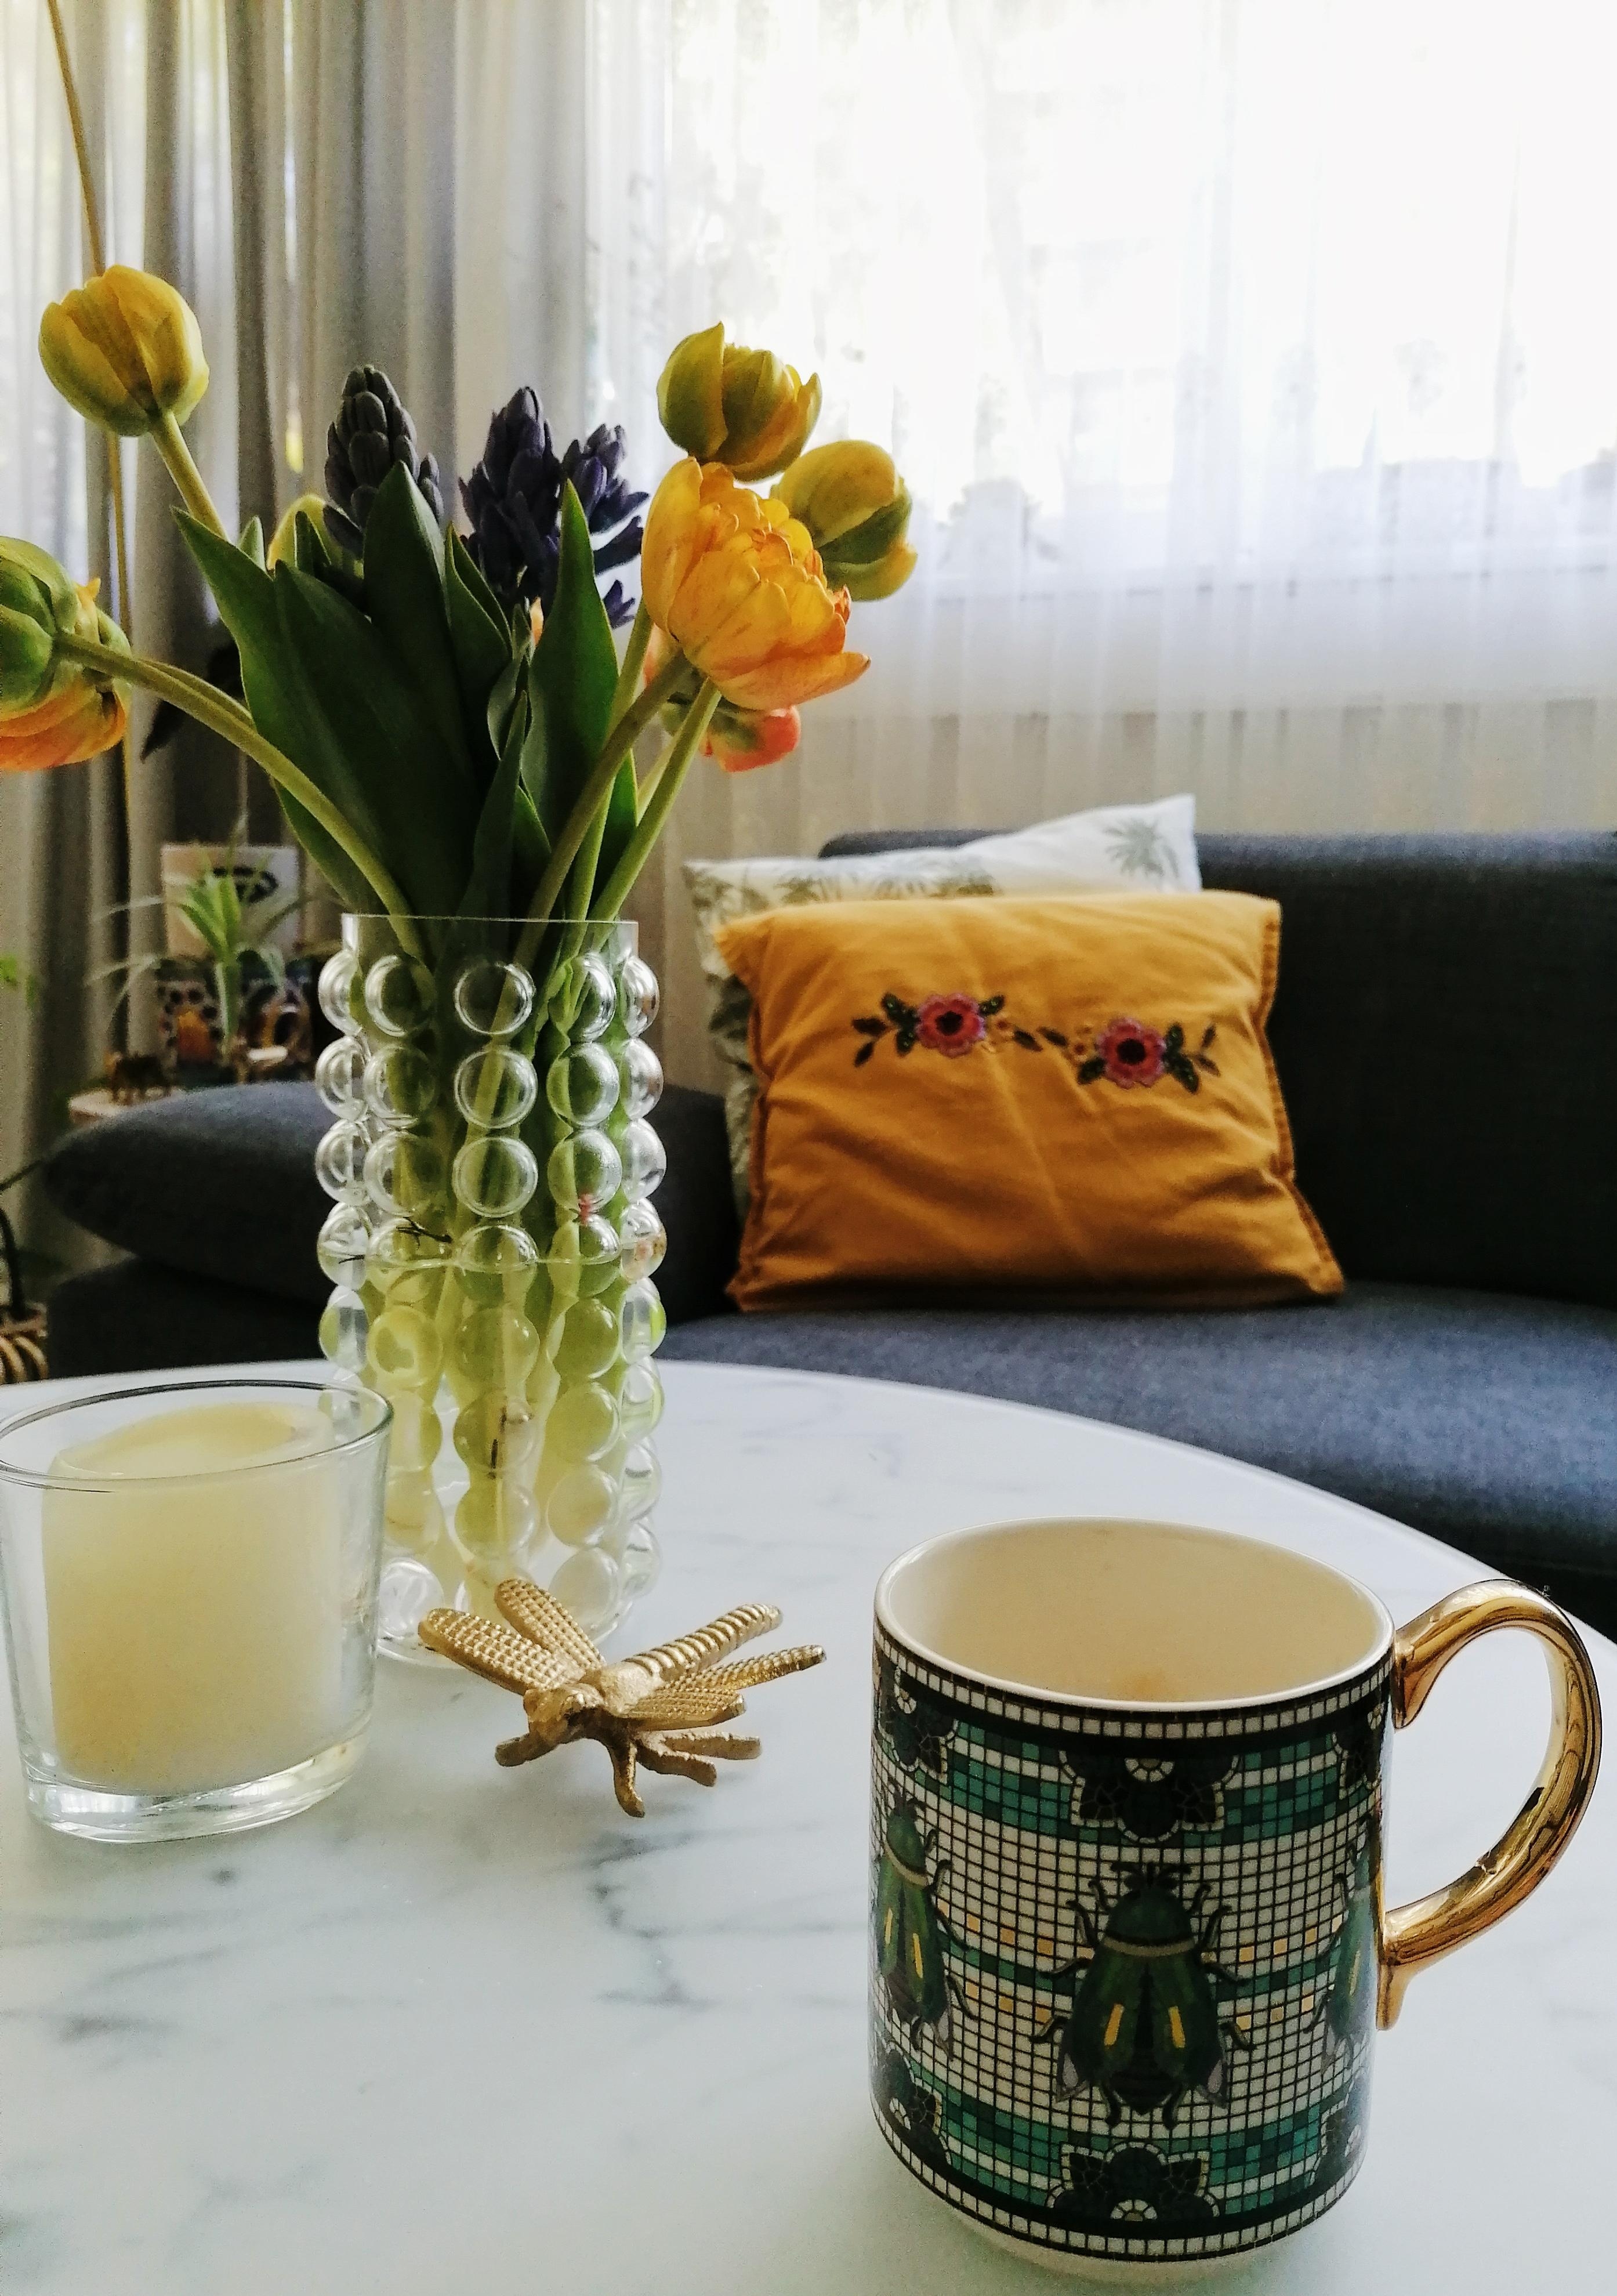 Kaffee und frische Blumen machen mich glücklich #couchmagazin #couchstyle #coffeelover 